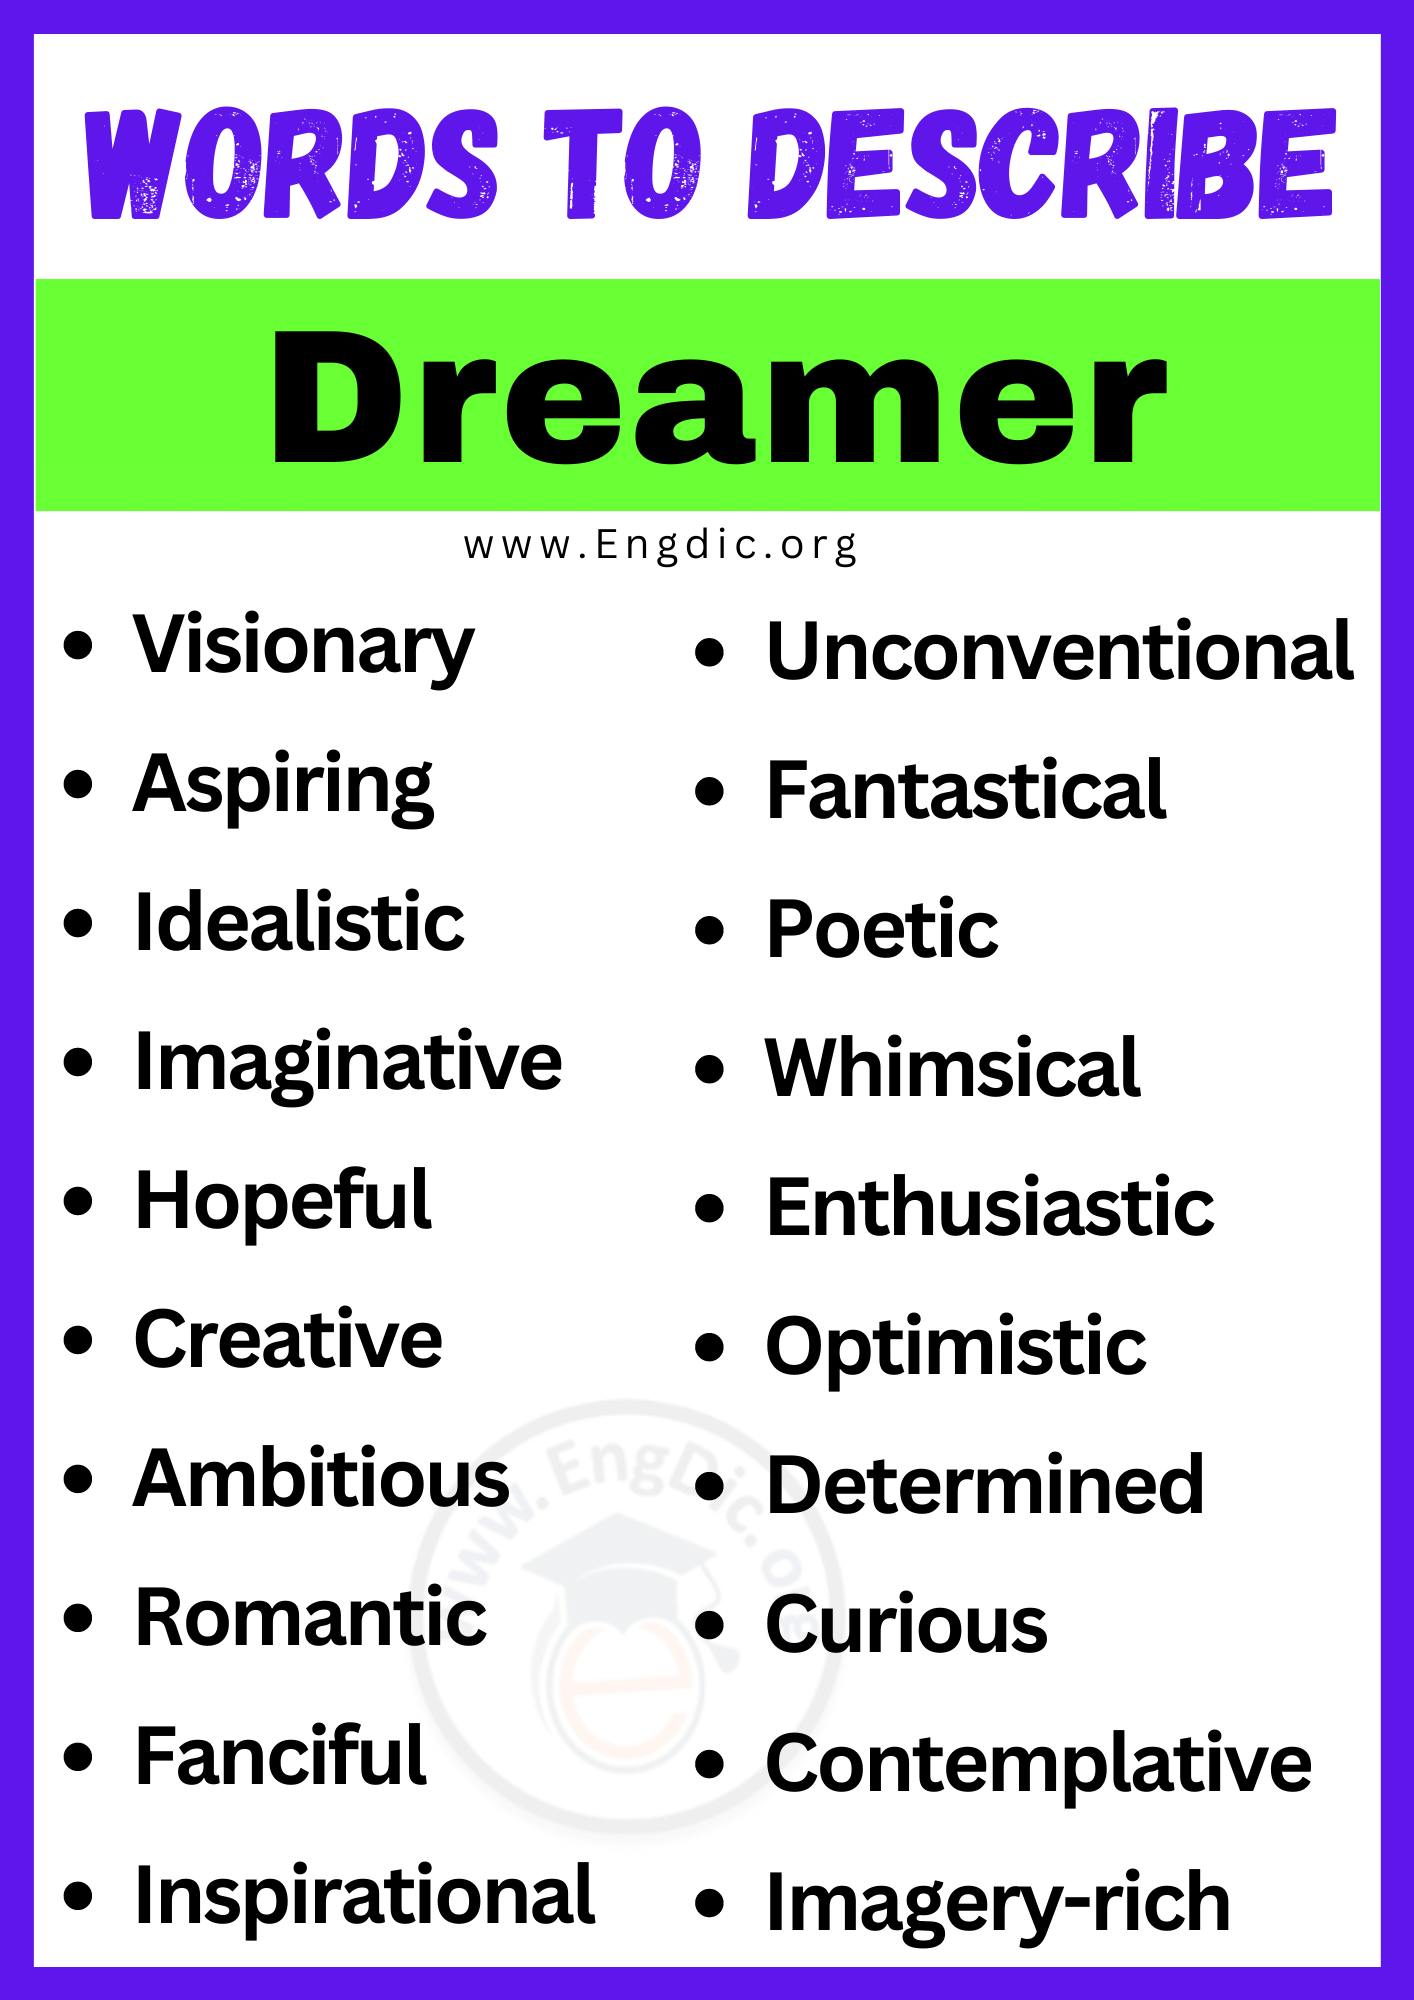 Words to Describe Dreamer